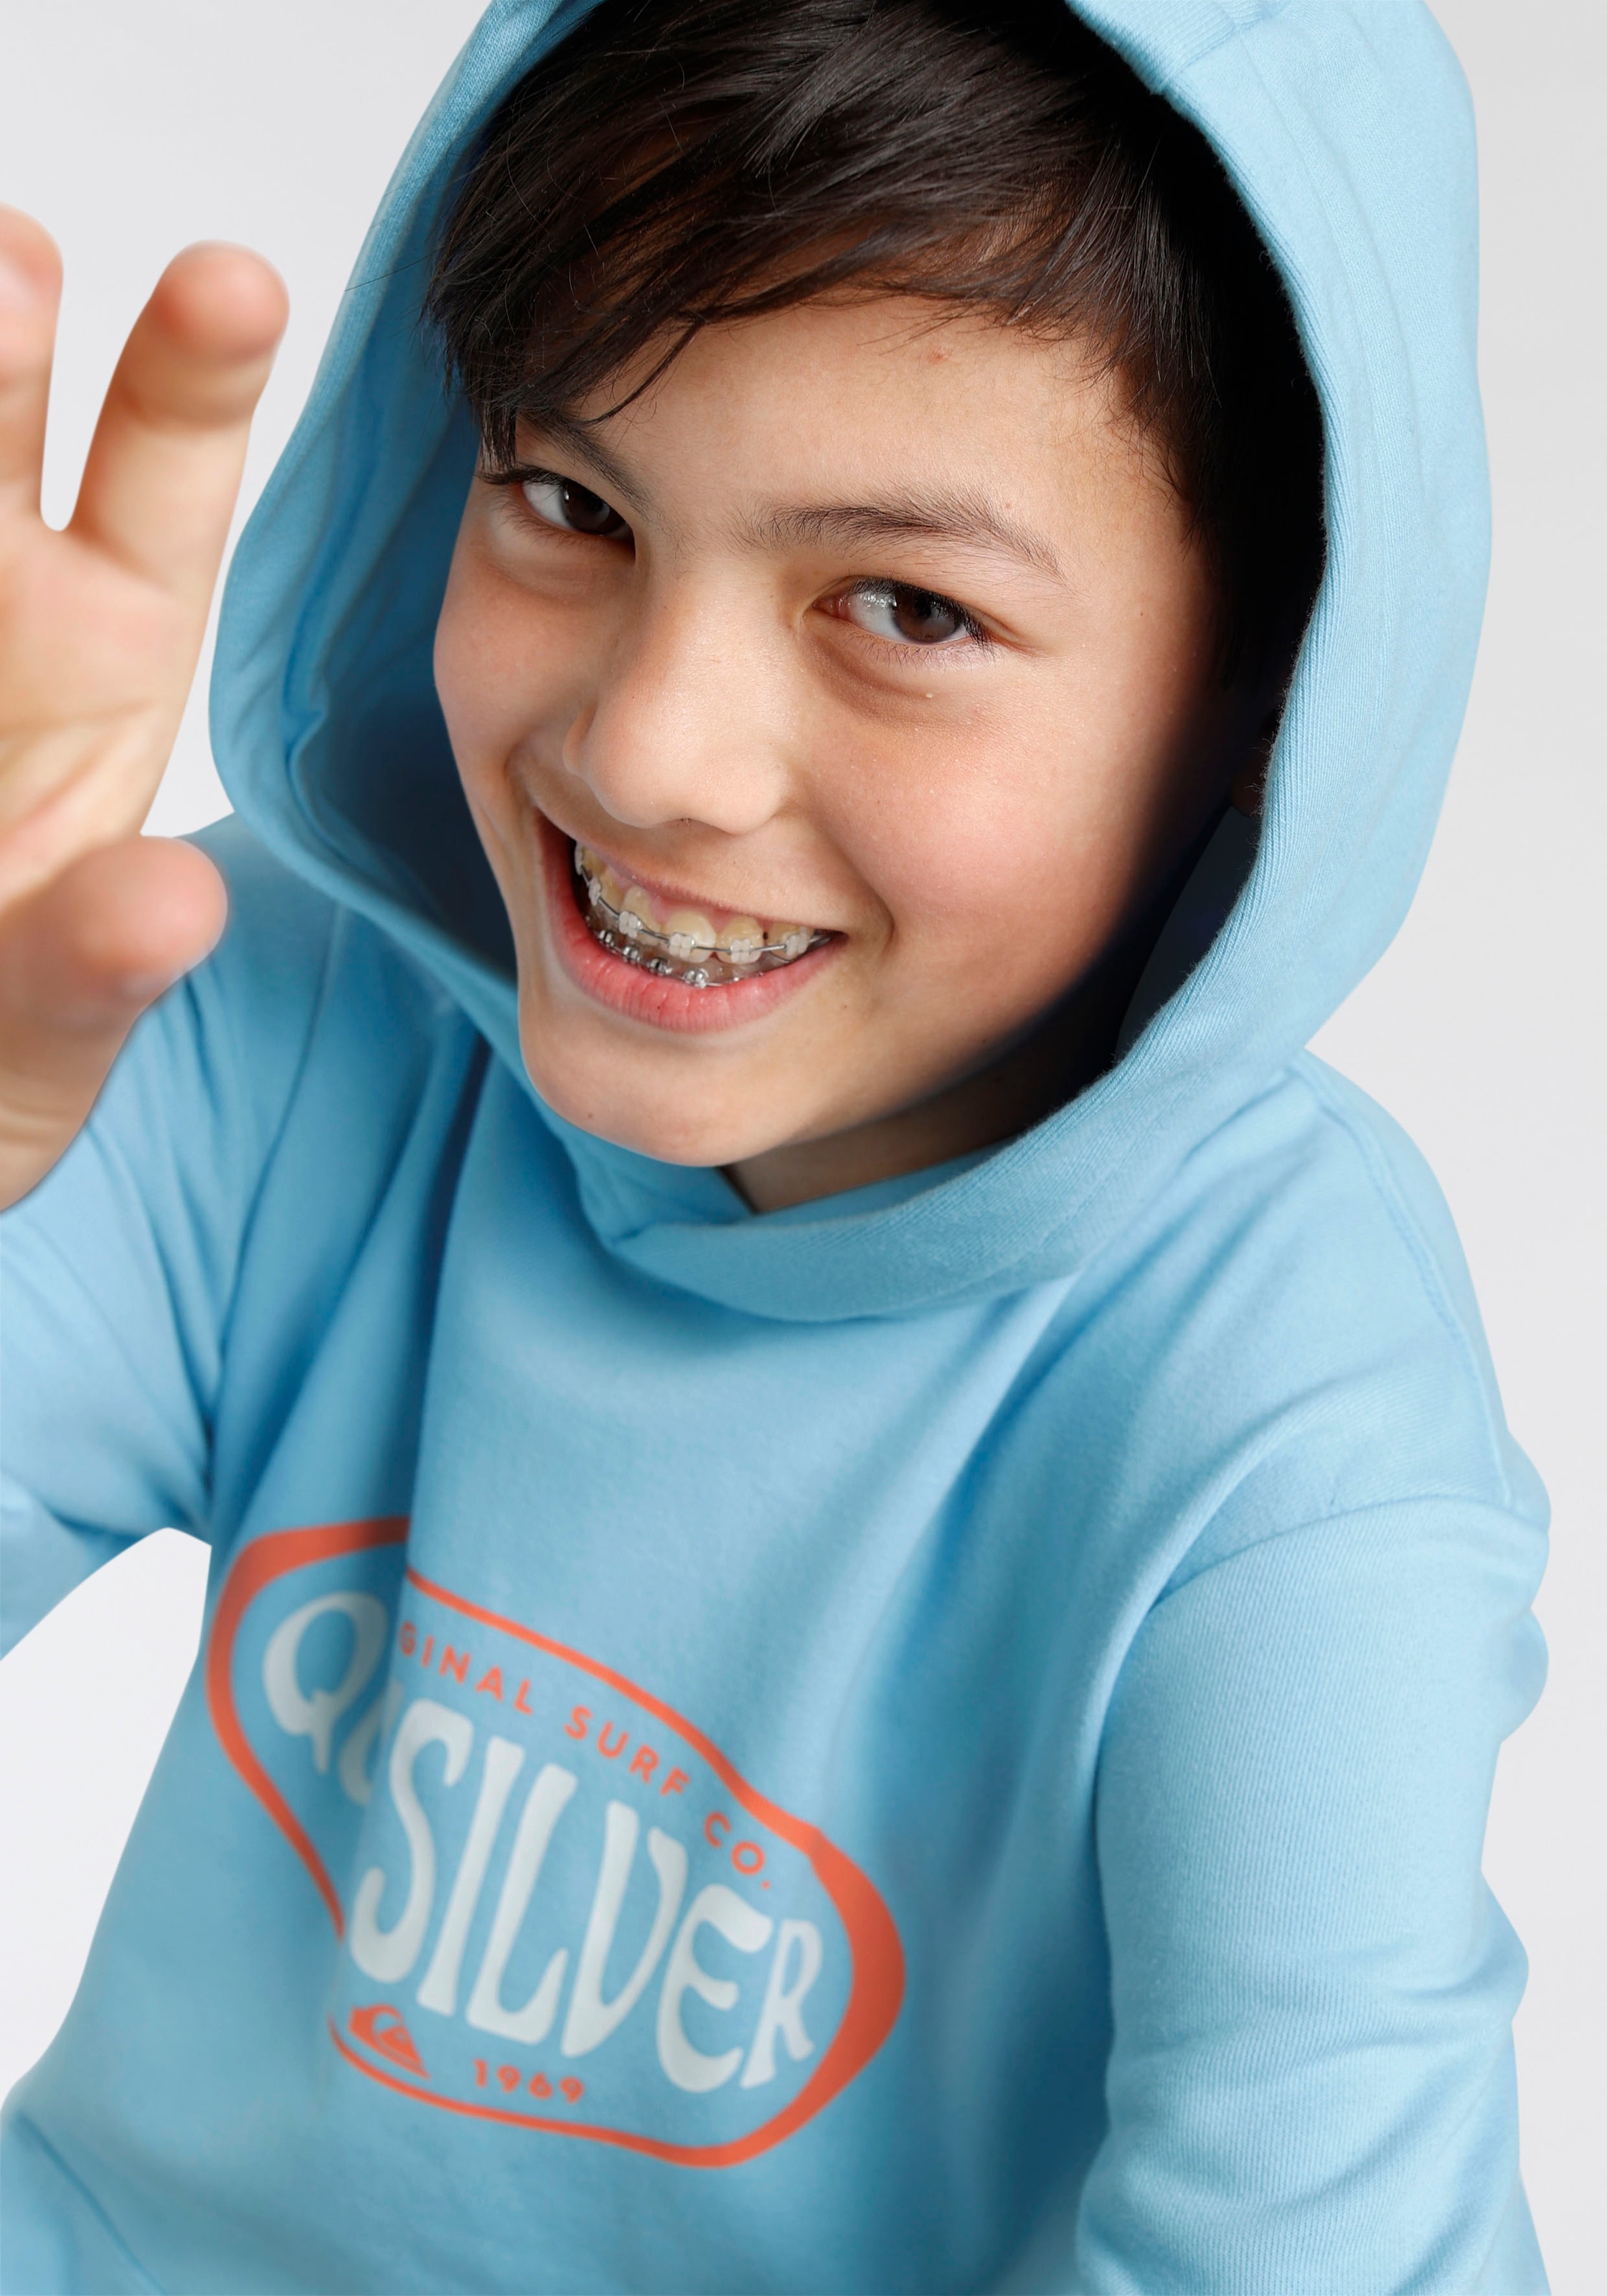 »Jungen günstig Jelmoli-Versand Quiksilver kaufen | mit Kapuzensweatshirt Hoodie Logodruck« ✵